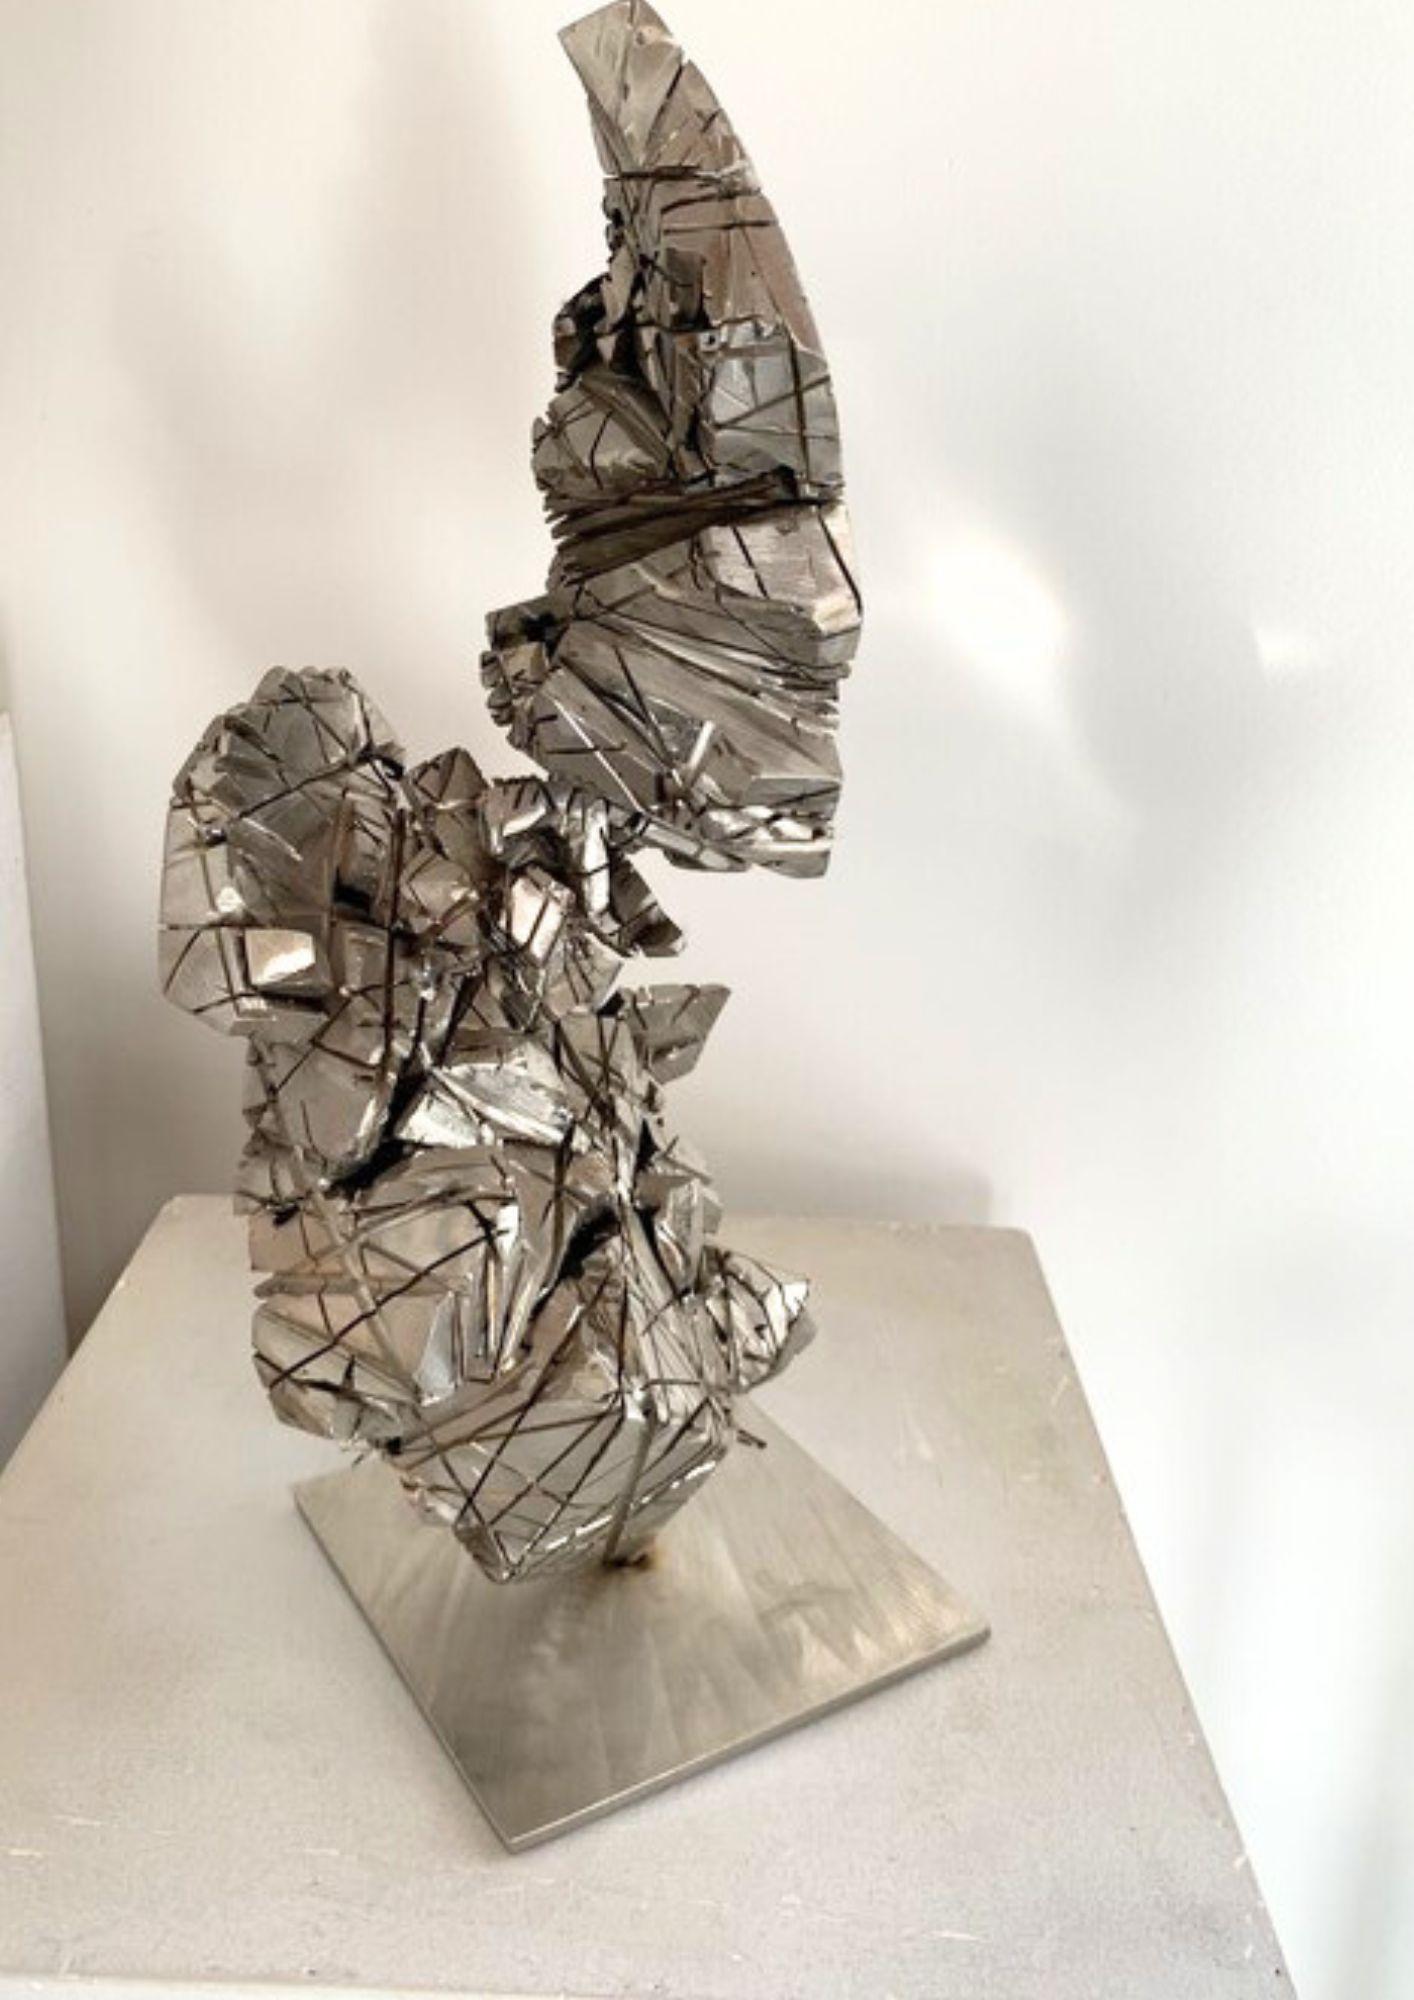 Die Skulptur Spyrite 8 ist ein Kunstwerk aus Edelstahl, das das Konzept der Feuerexplosion und der Fusionsenergie verkörpert. Die harmonischen Linien und Formen der Skulptur erinnern an die Ästhetik des eisenhaltigen Minerals und bieten eine